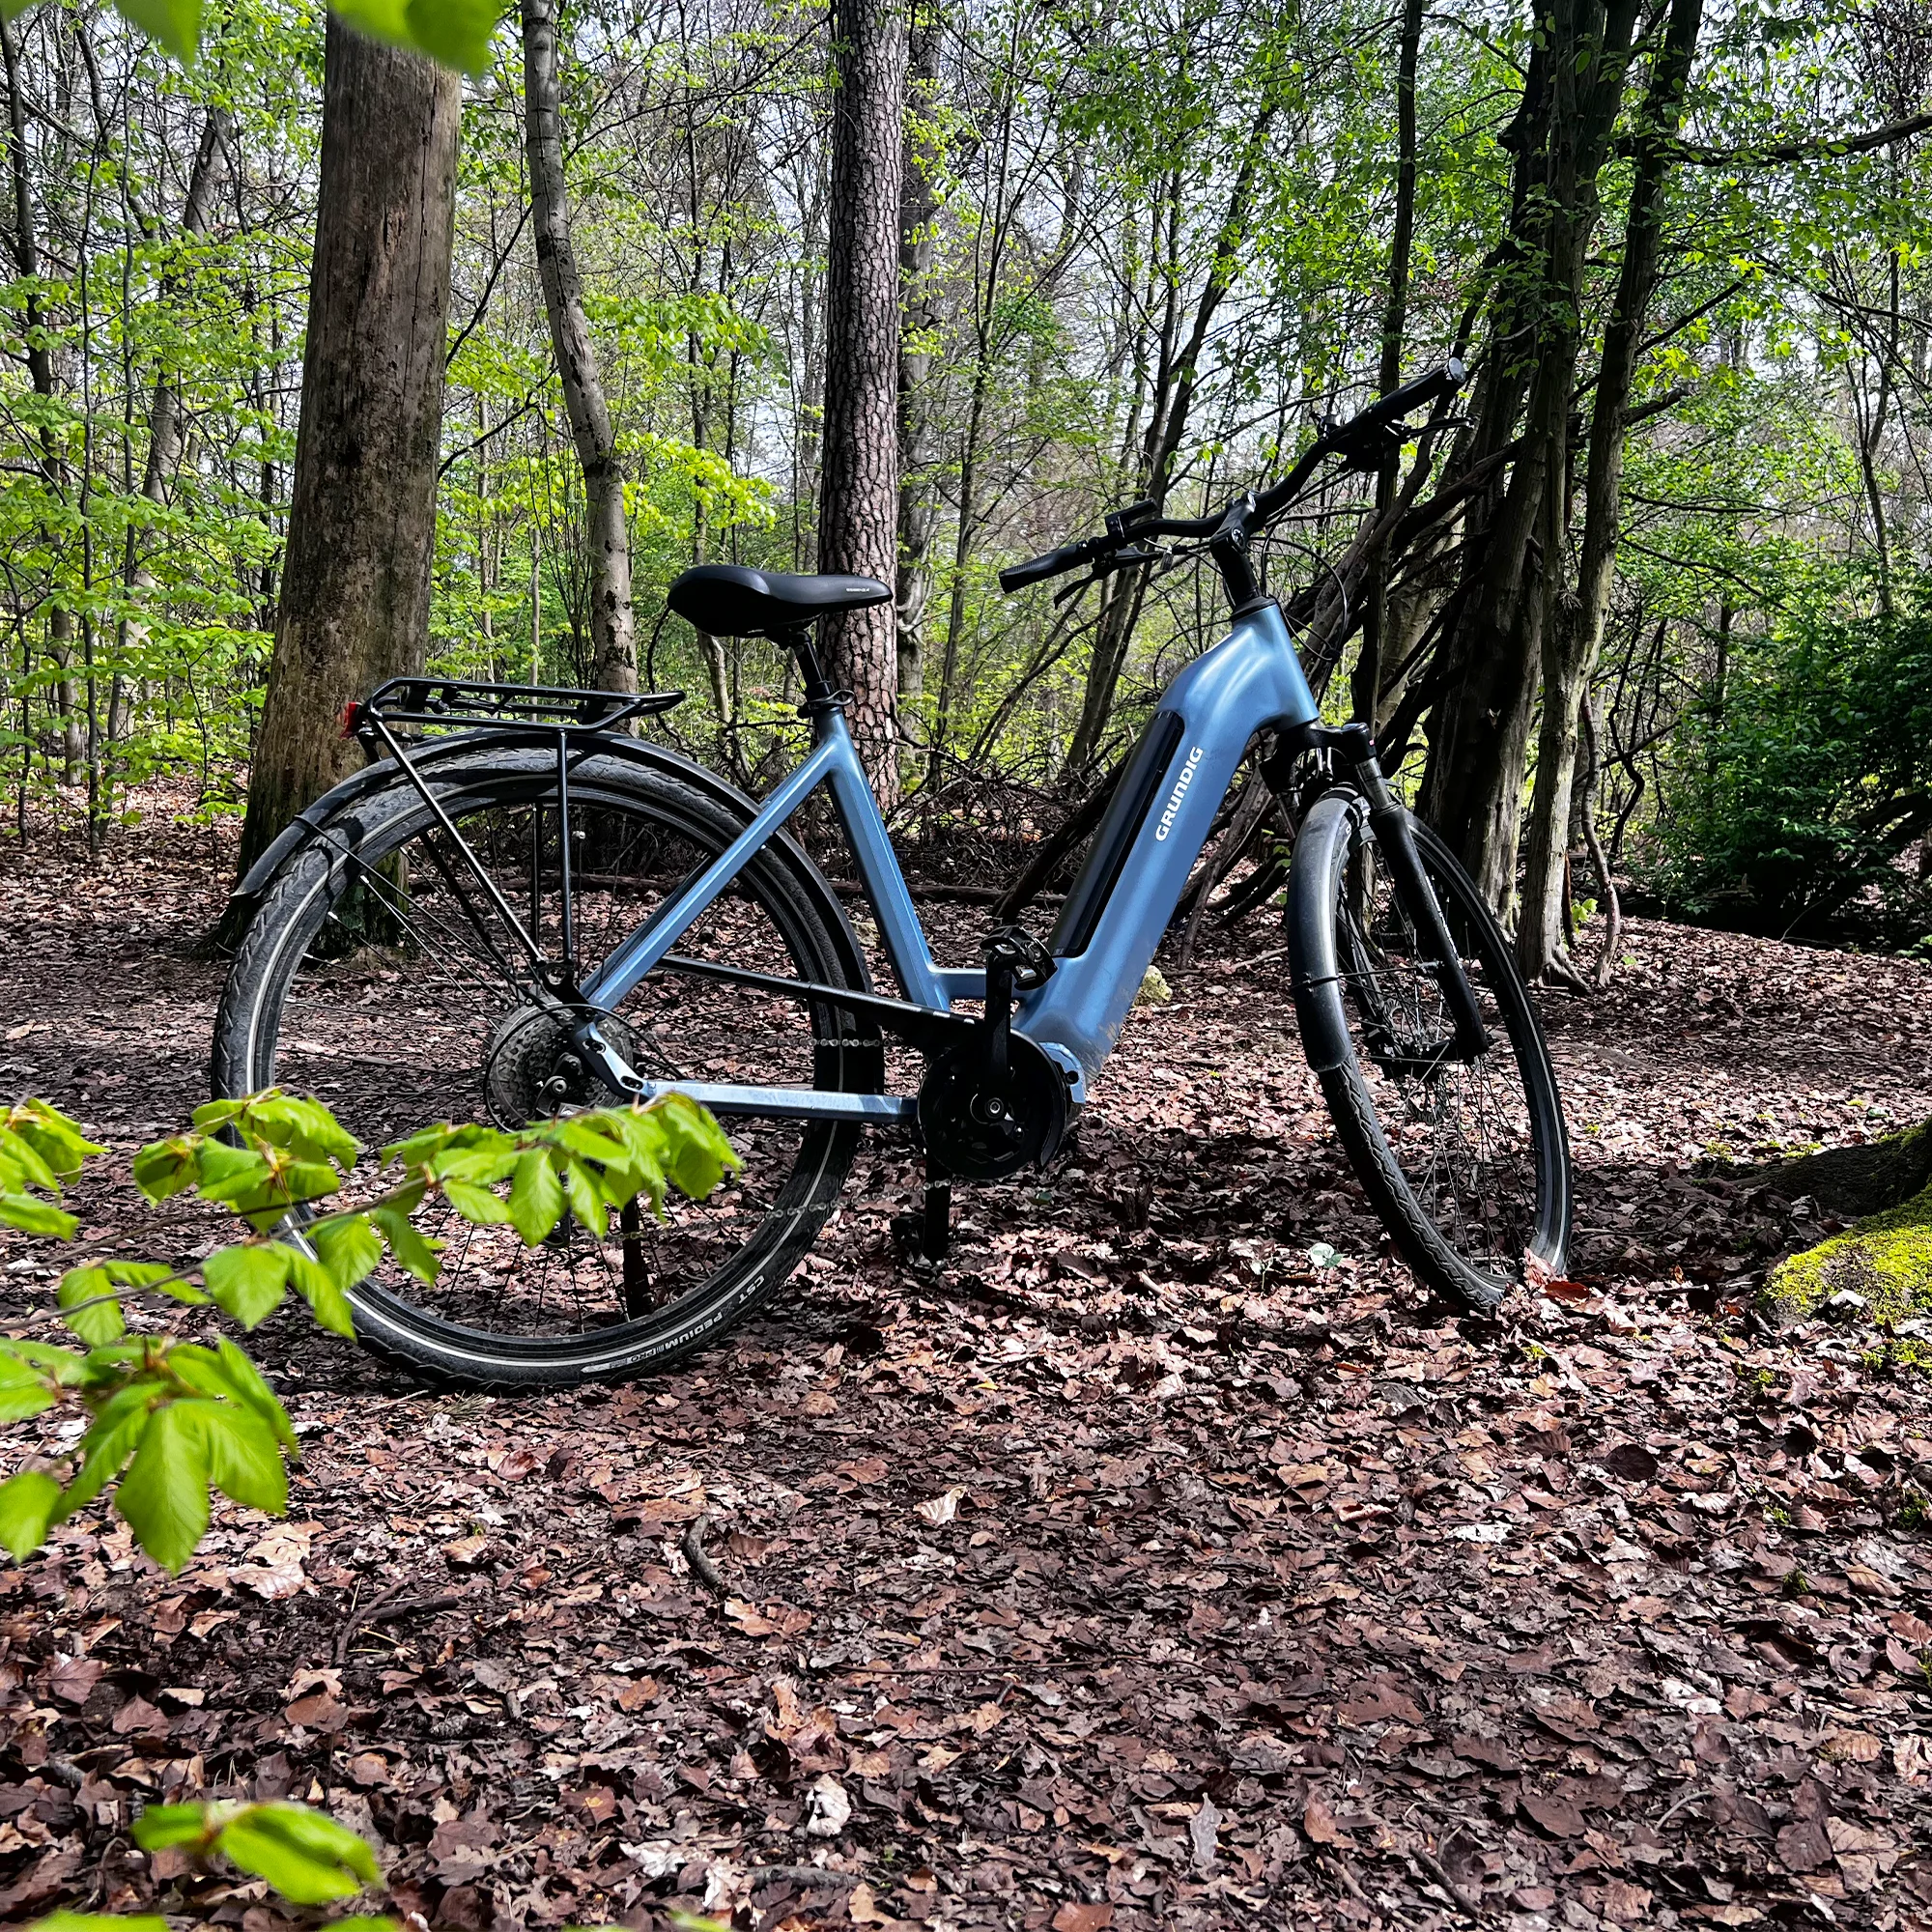 GRUNDIG GCB-1 Bicicletta elettrica Eisblau